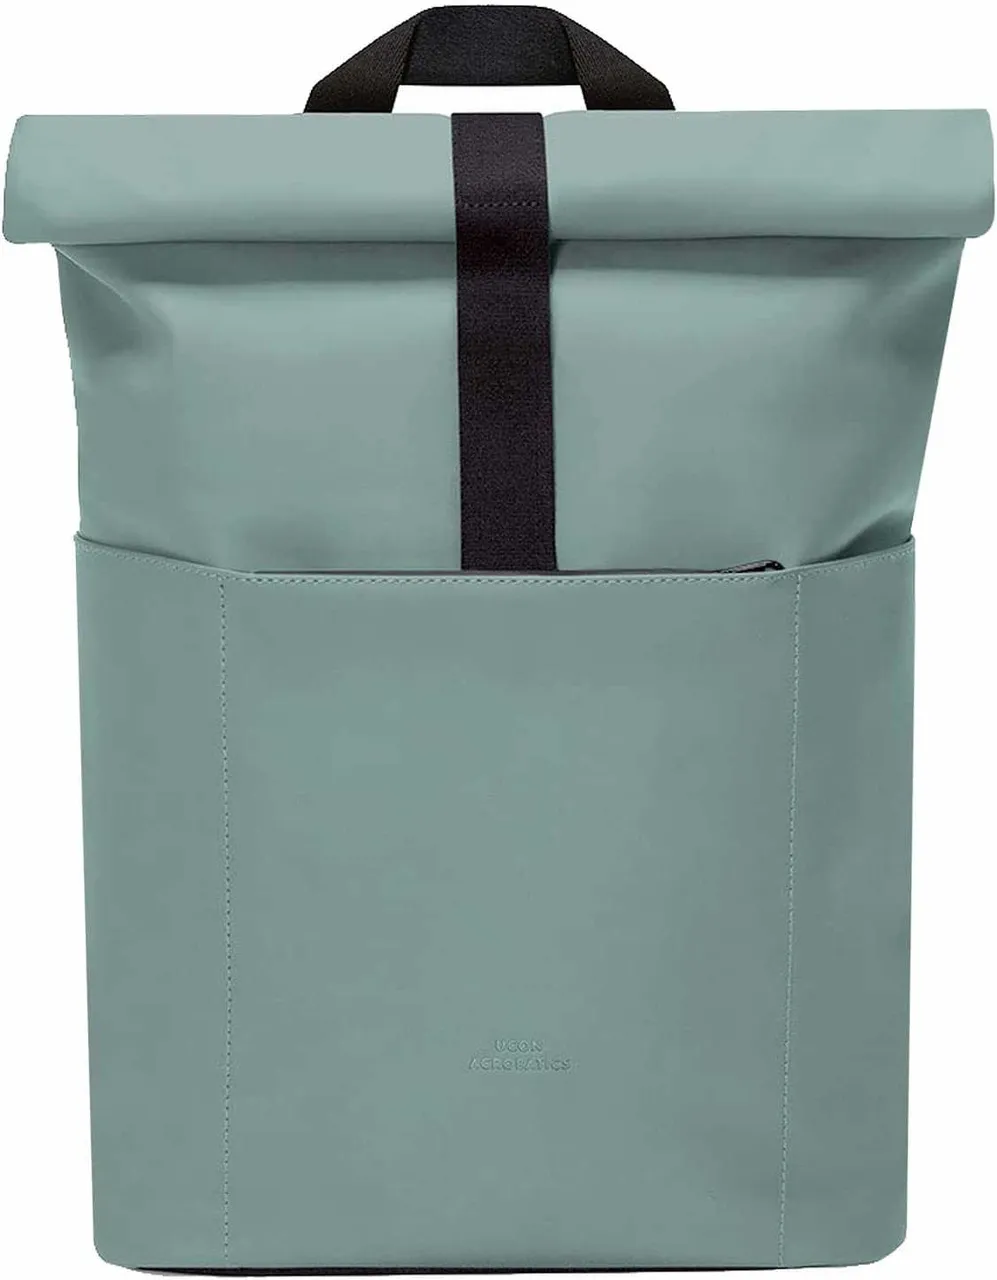 Handtaschen khaki Farbe: grün/oliv -